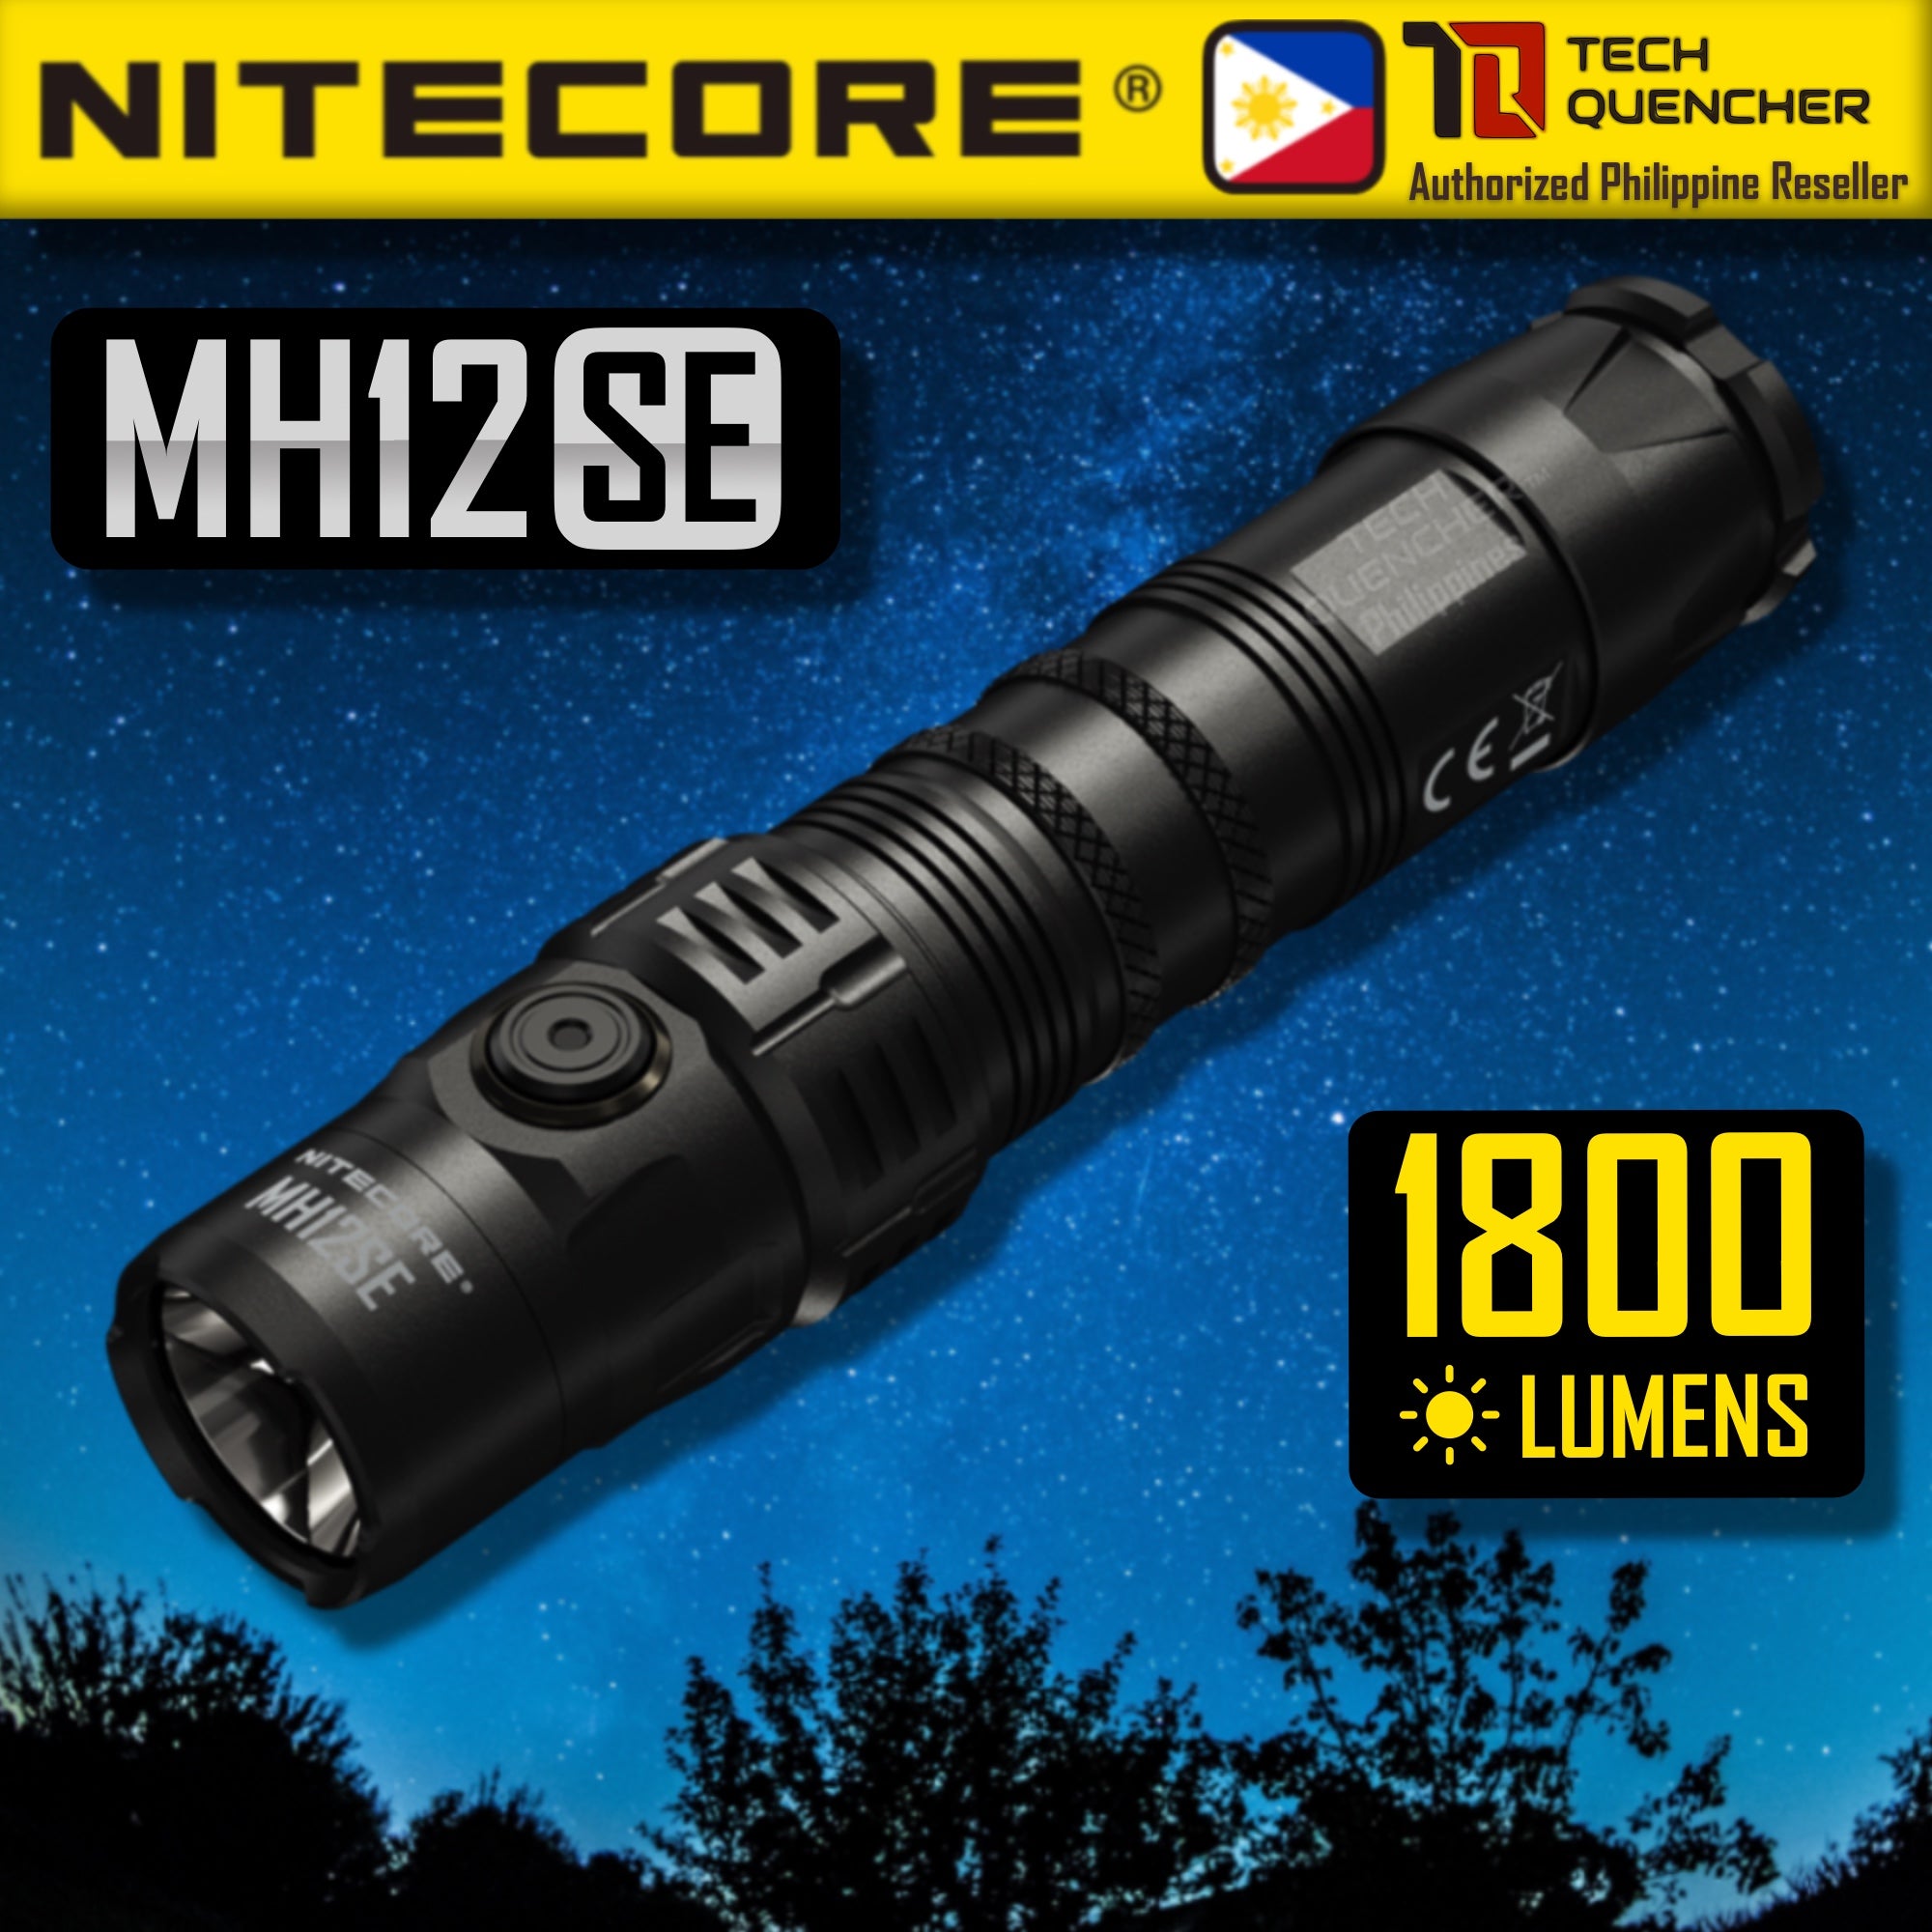 Nitecore MH12SE Flashlight